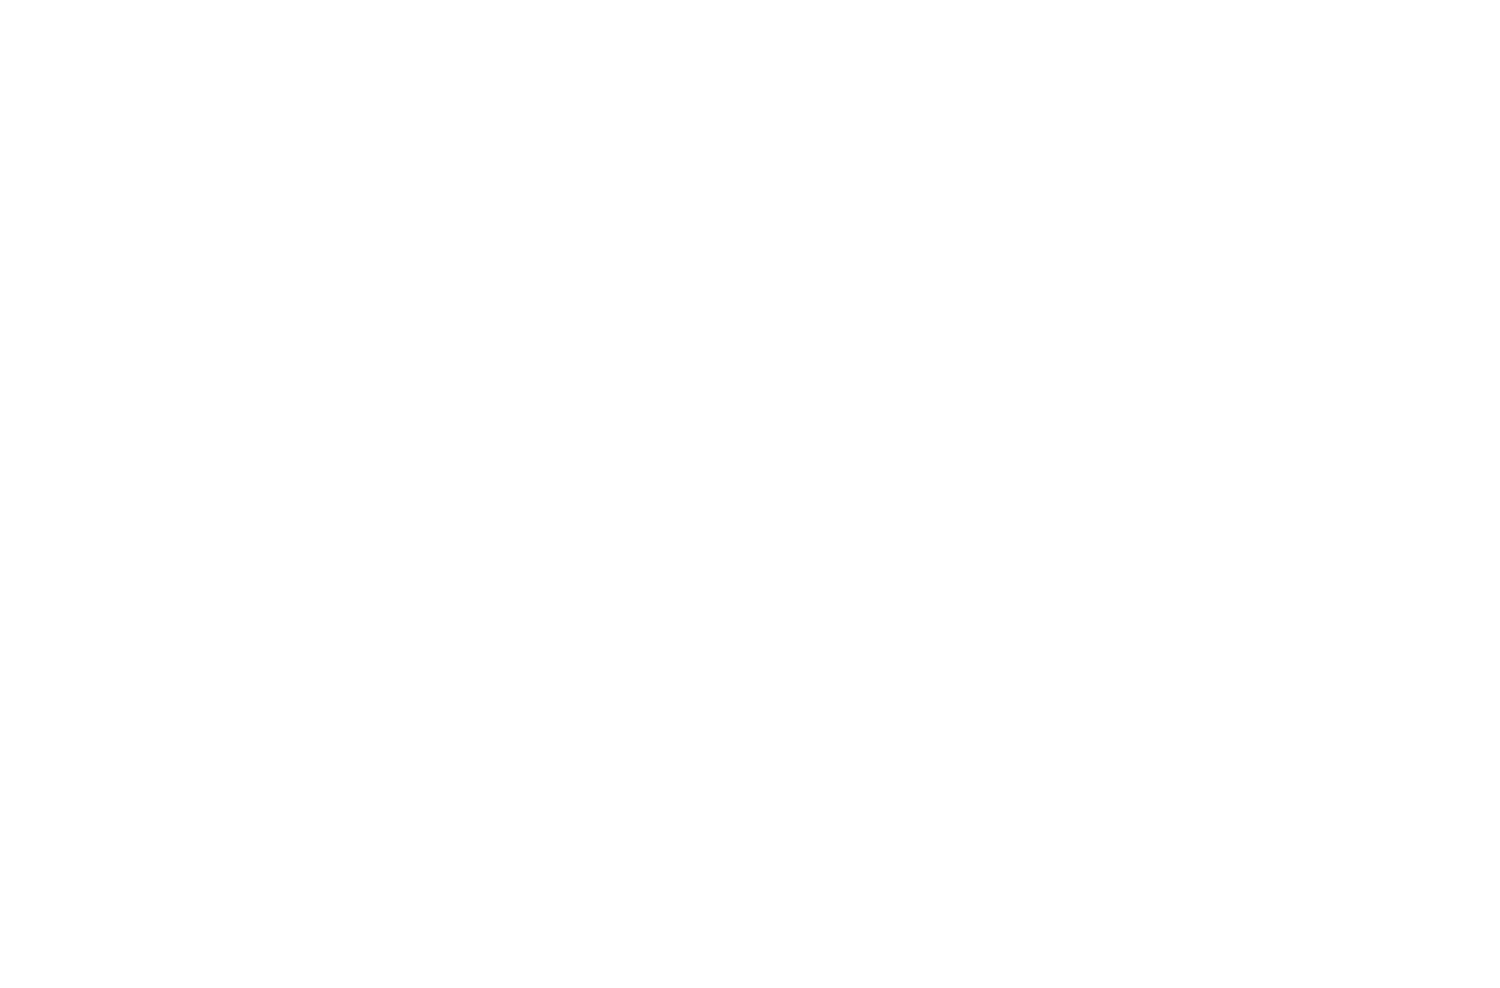 261 Designs